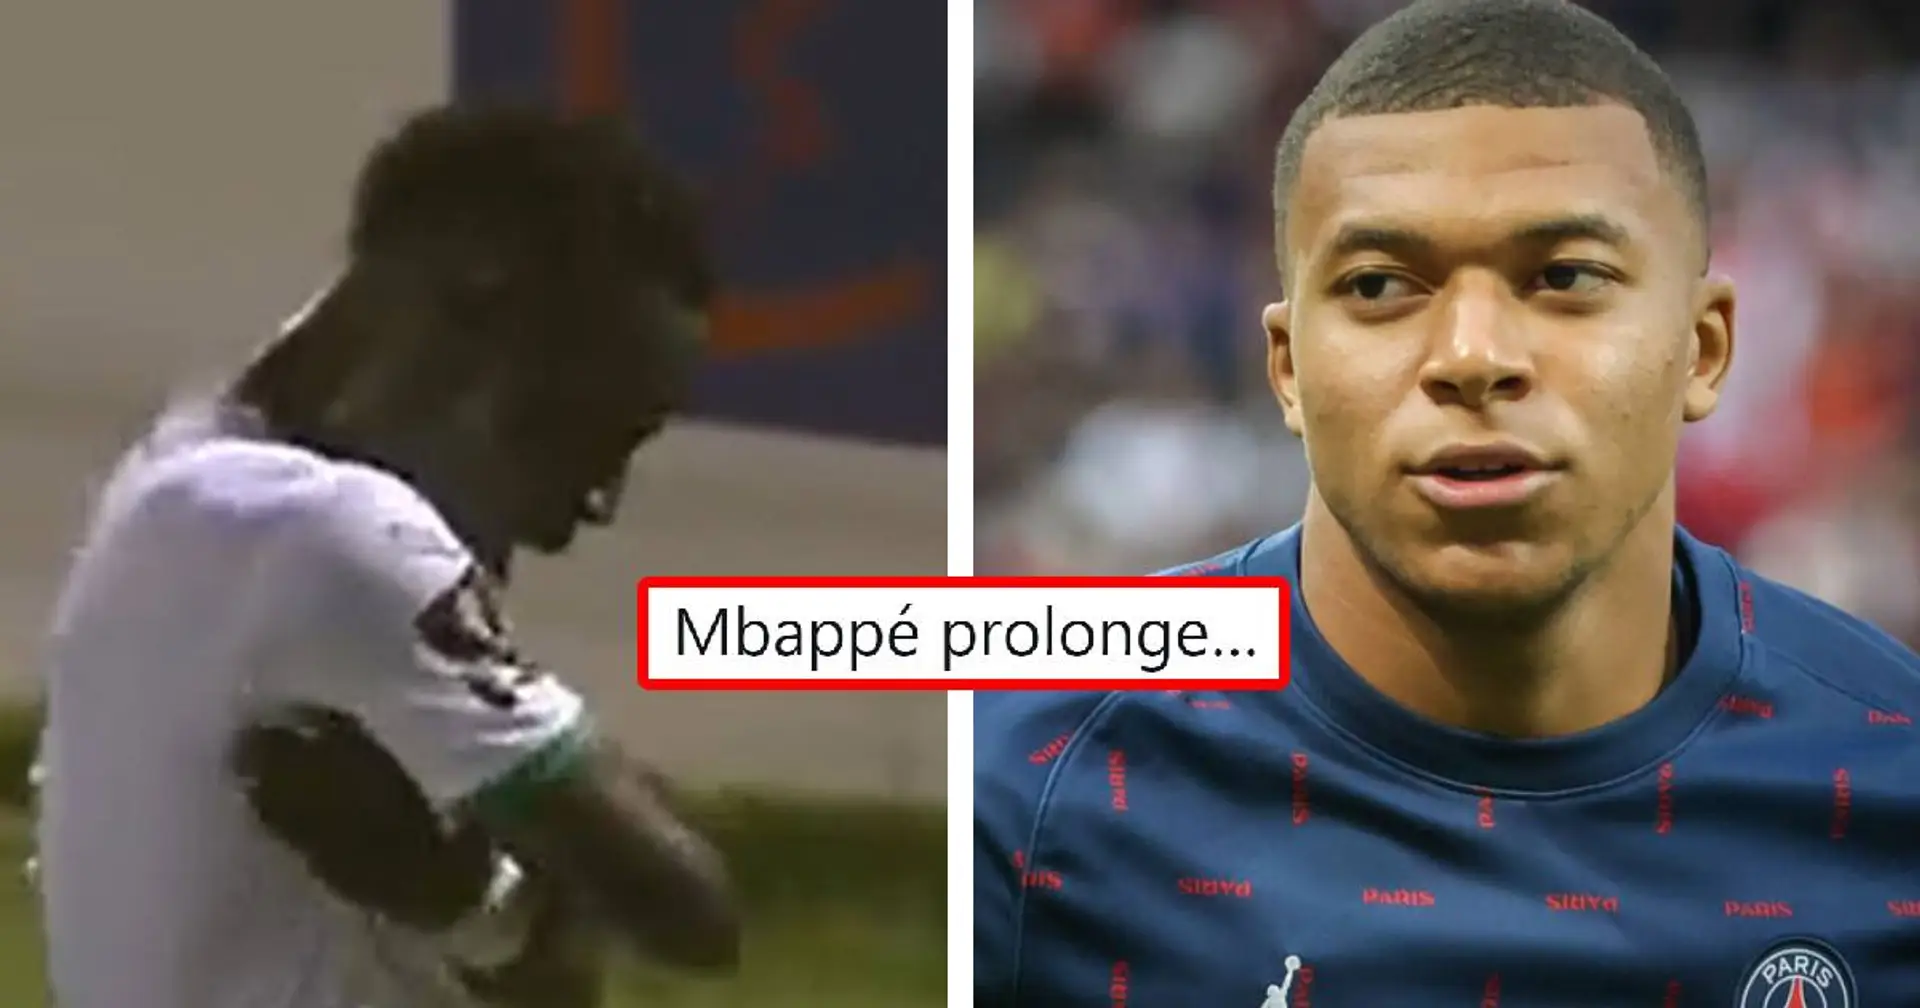 "Mbappé prolonge!" un fan du PSG voit dans la célébration de Gueye un signe du destin pour Mbappé